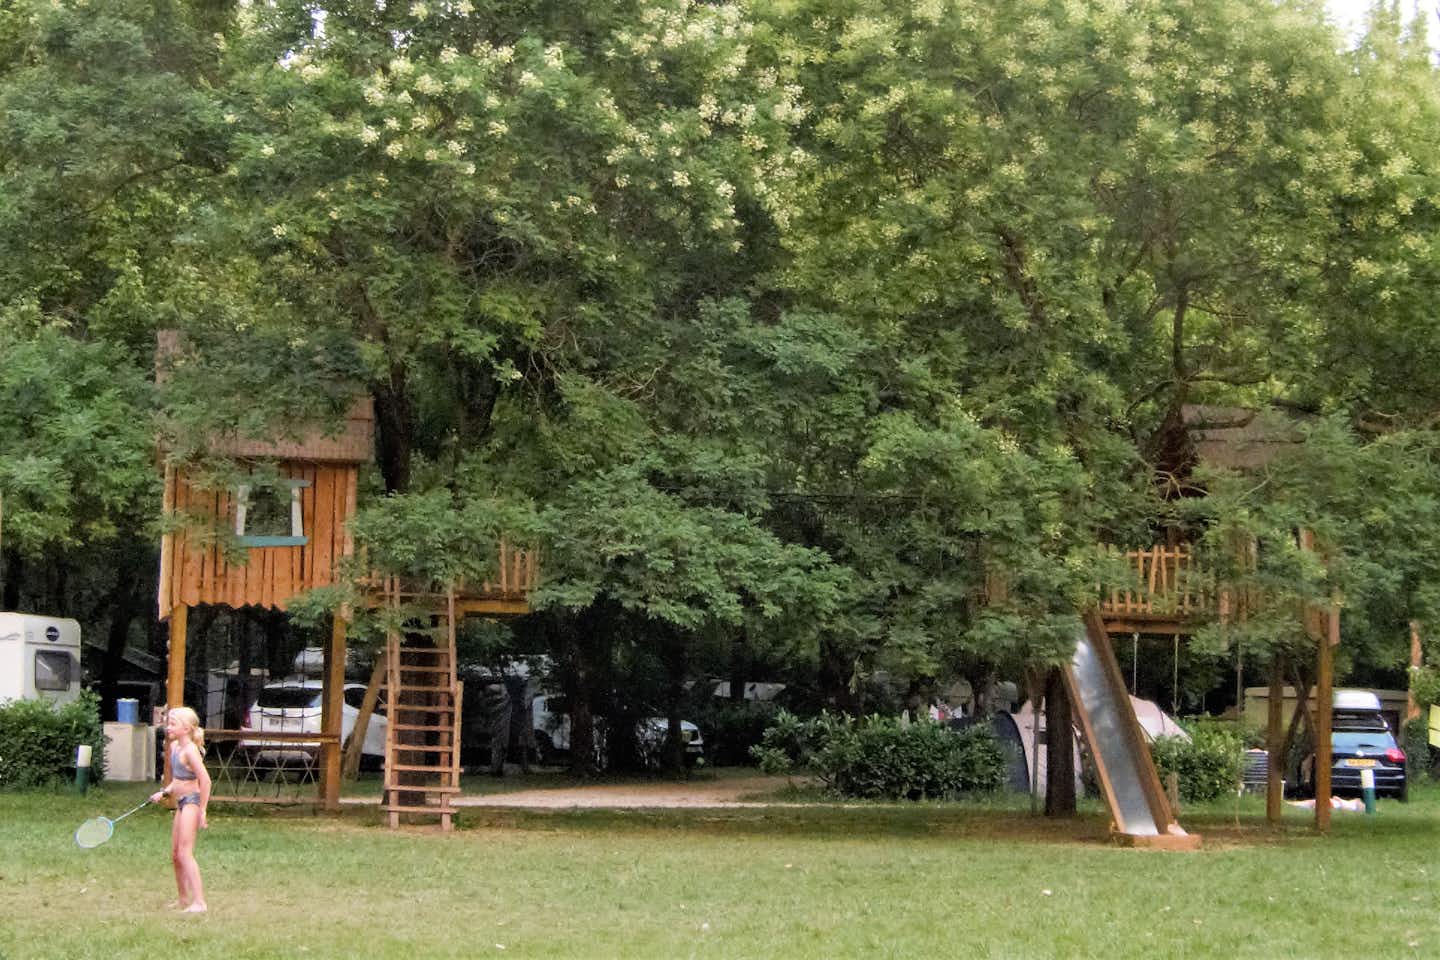 Camping Universal - Kinderspielplatz mit Kletterburgen und Rutschen